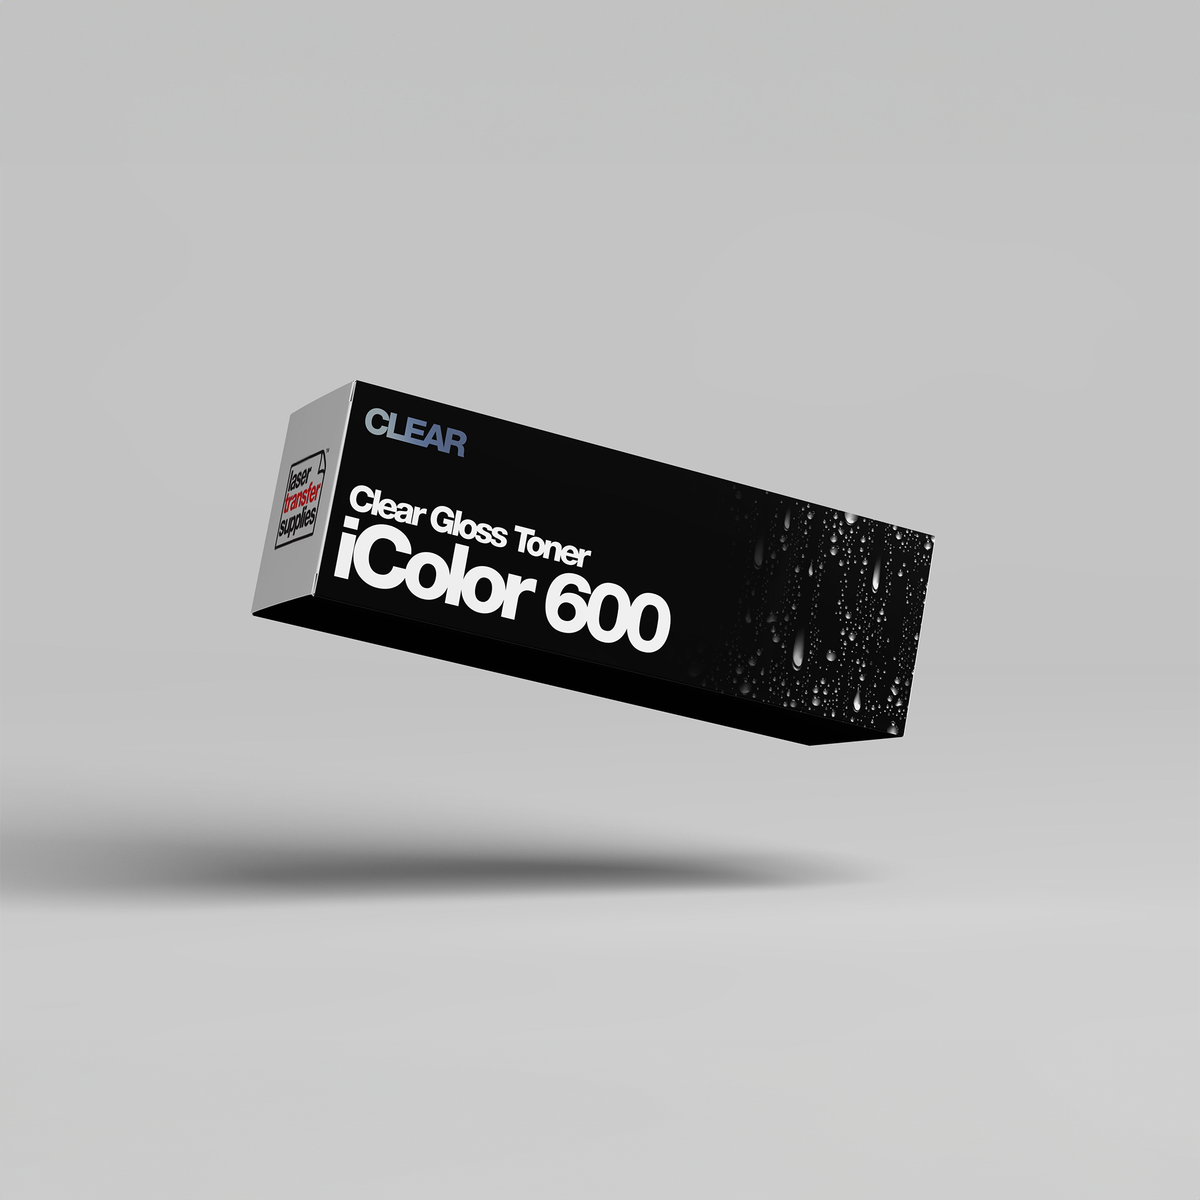 IColor 600 Specialty Toner